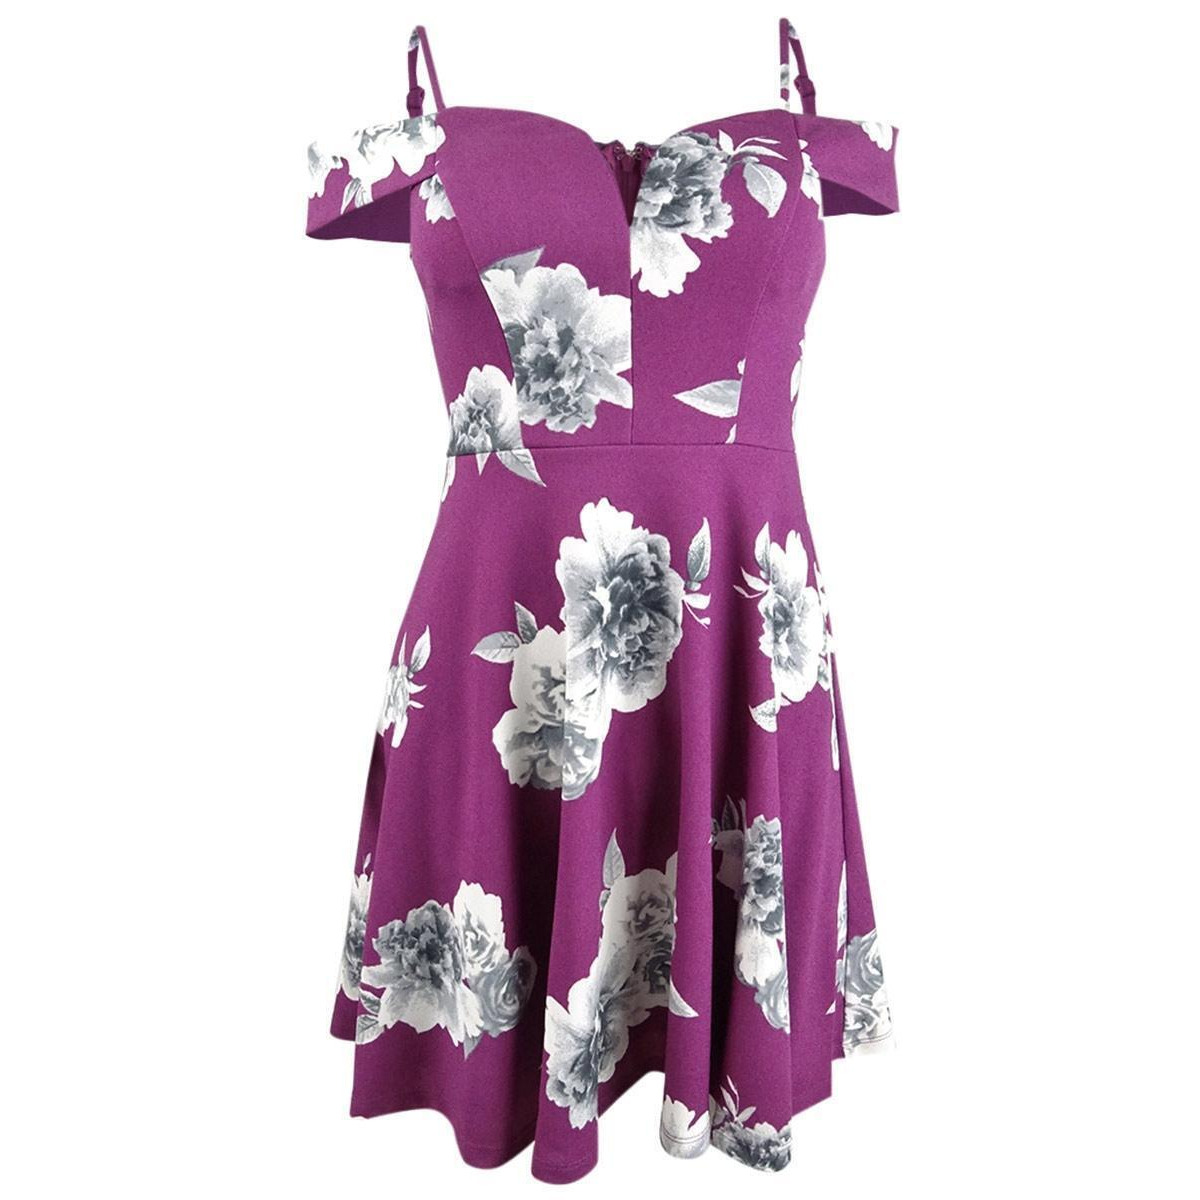 City Studios Juniors' Off-The-Shoulder Floral-Print Dress